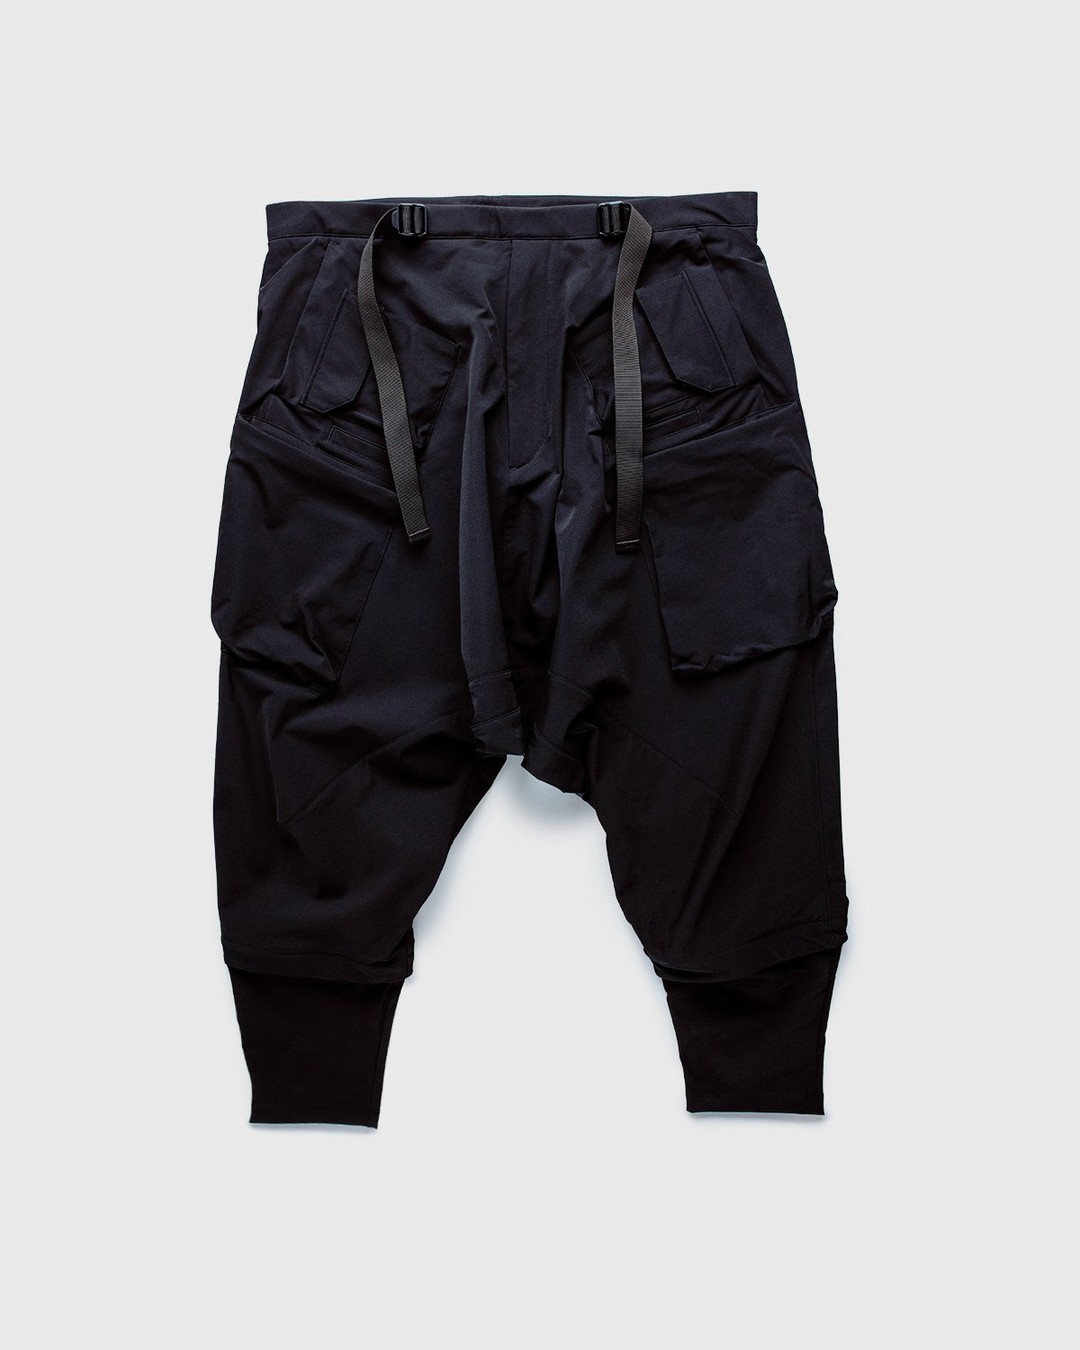 ACRONYM – P30A-DS Pants Black - Active Pants - Black - Image 1